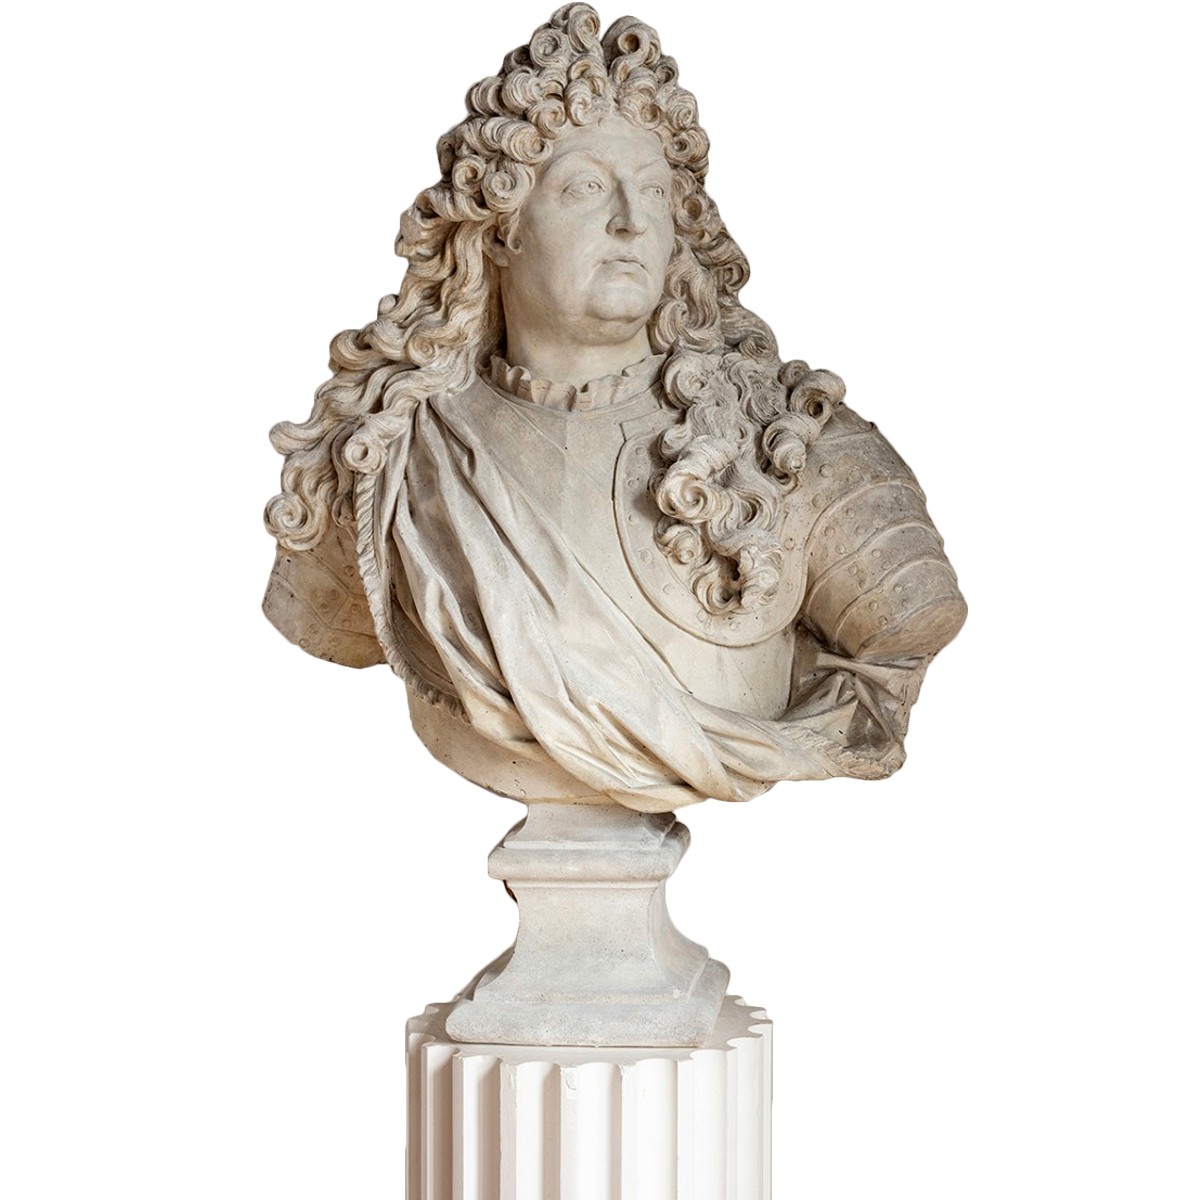 Portrait en buste du Roi Louis XIV en cuirasse portant lordre du